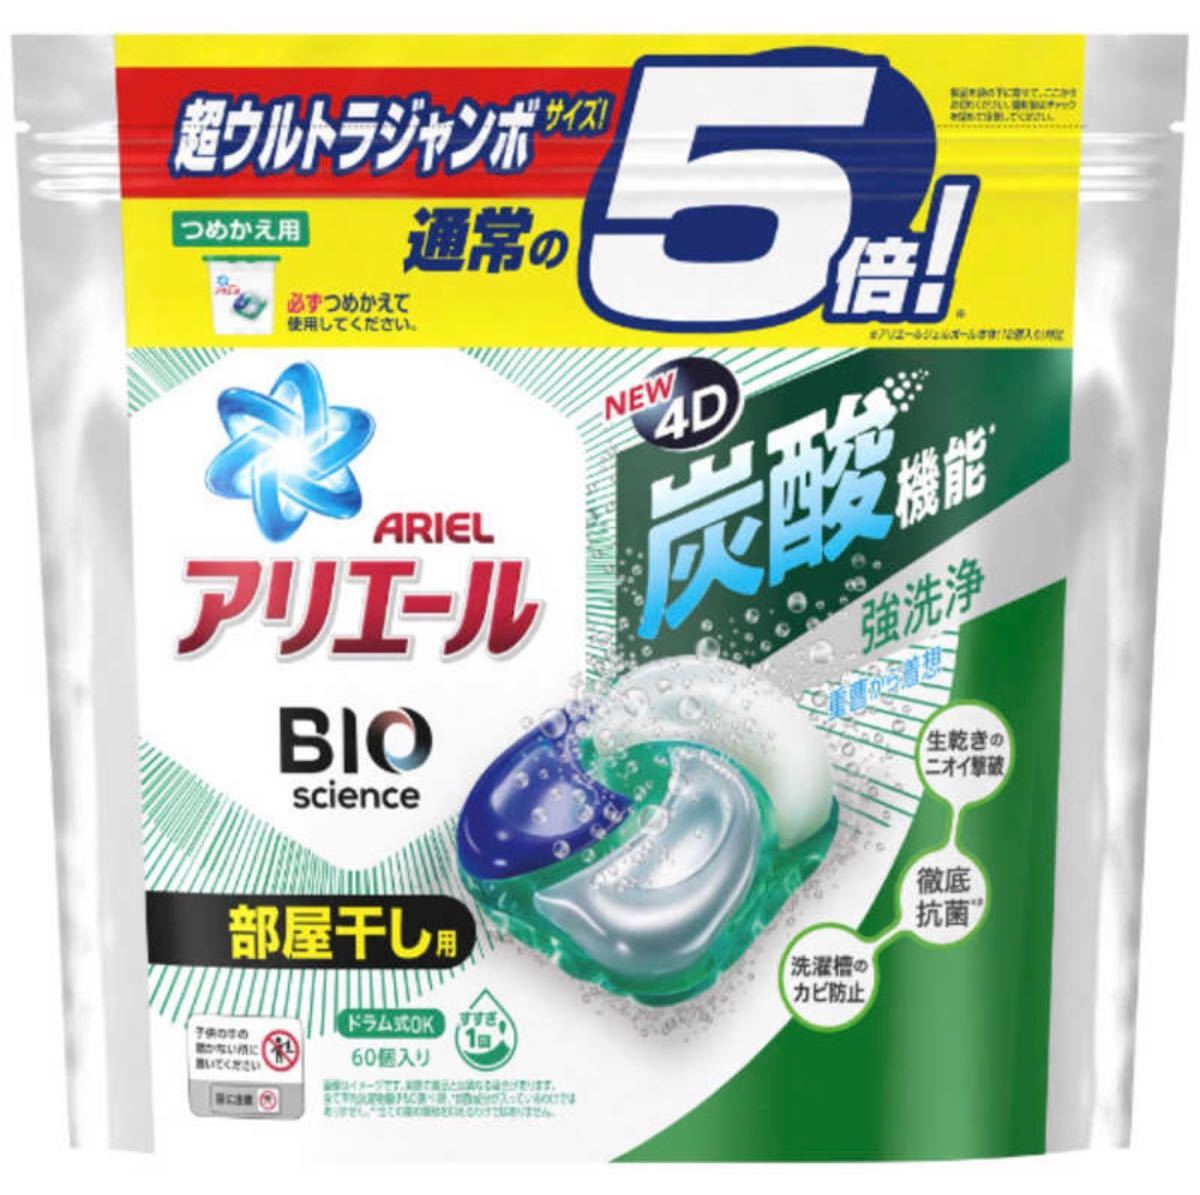 【新品未使用】炭酸 P&G アリエール ジェルボール4D 洗濯洗剤 部屋干しでも爽やかな香り 5倍 詰め替え(60個入)×2袋